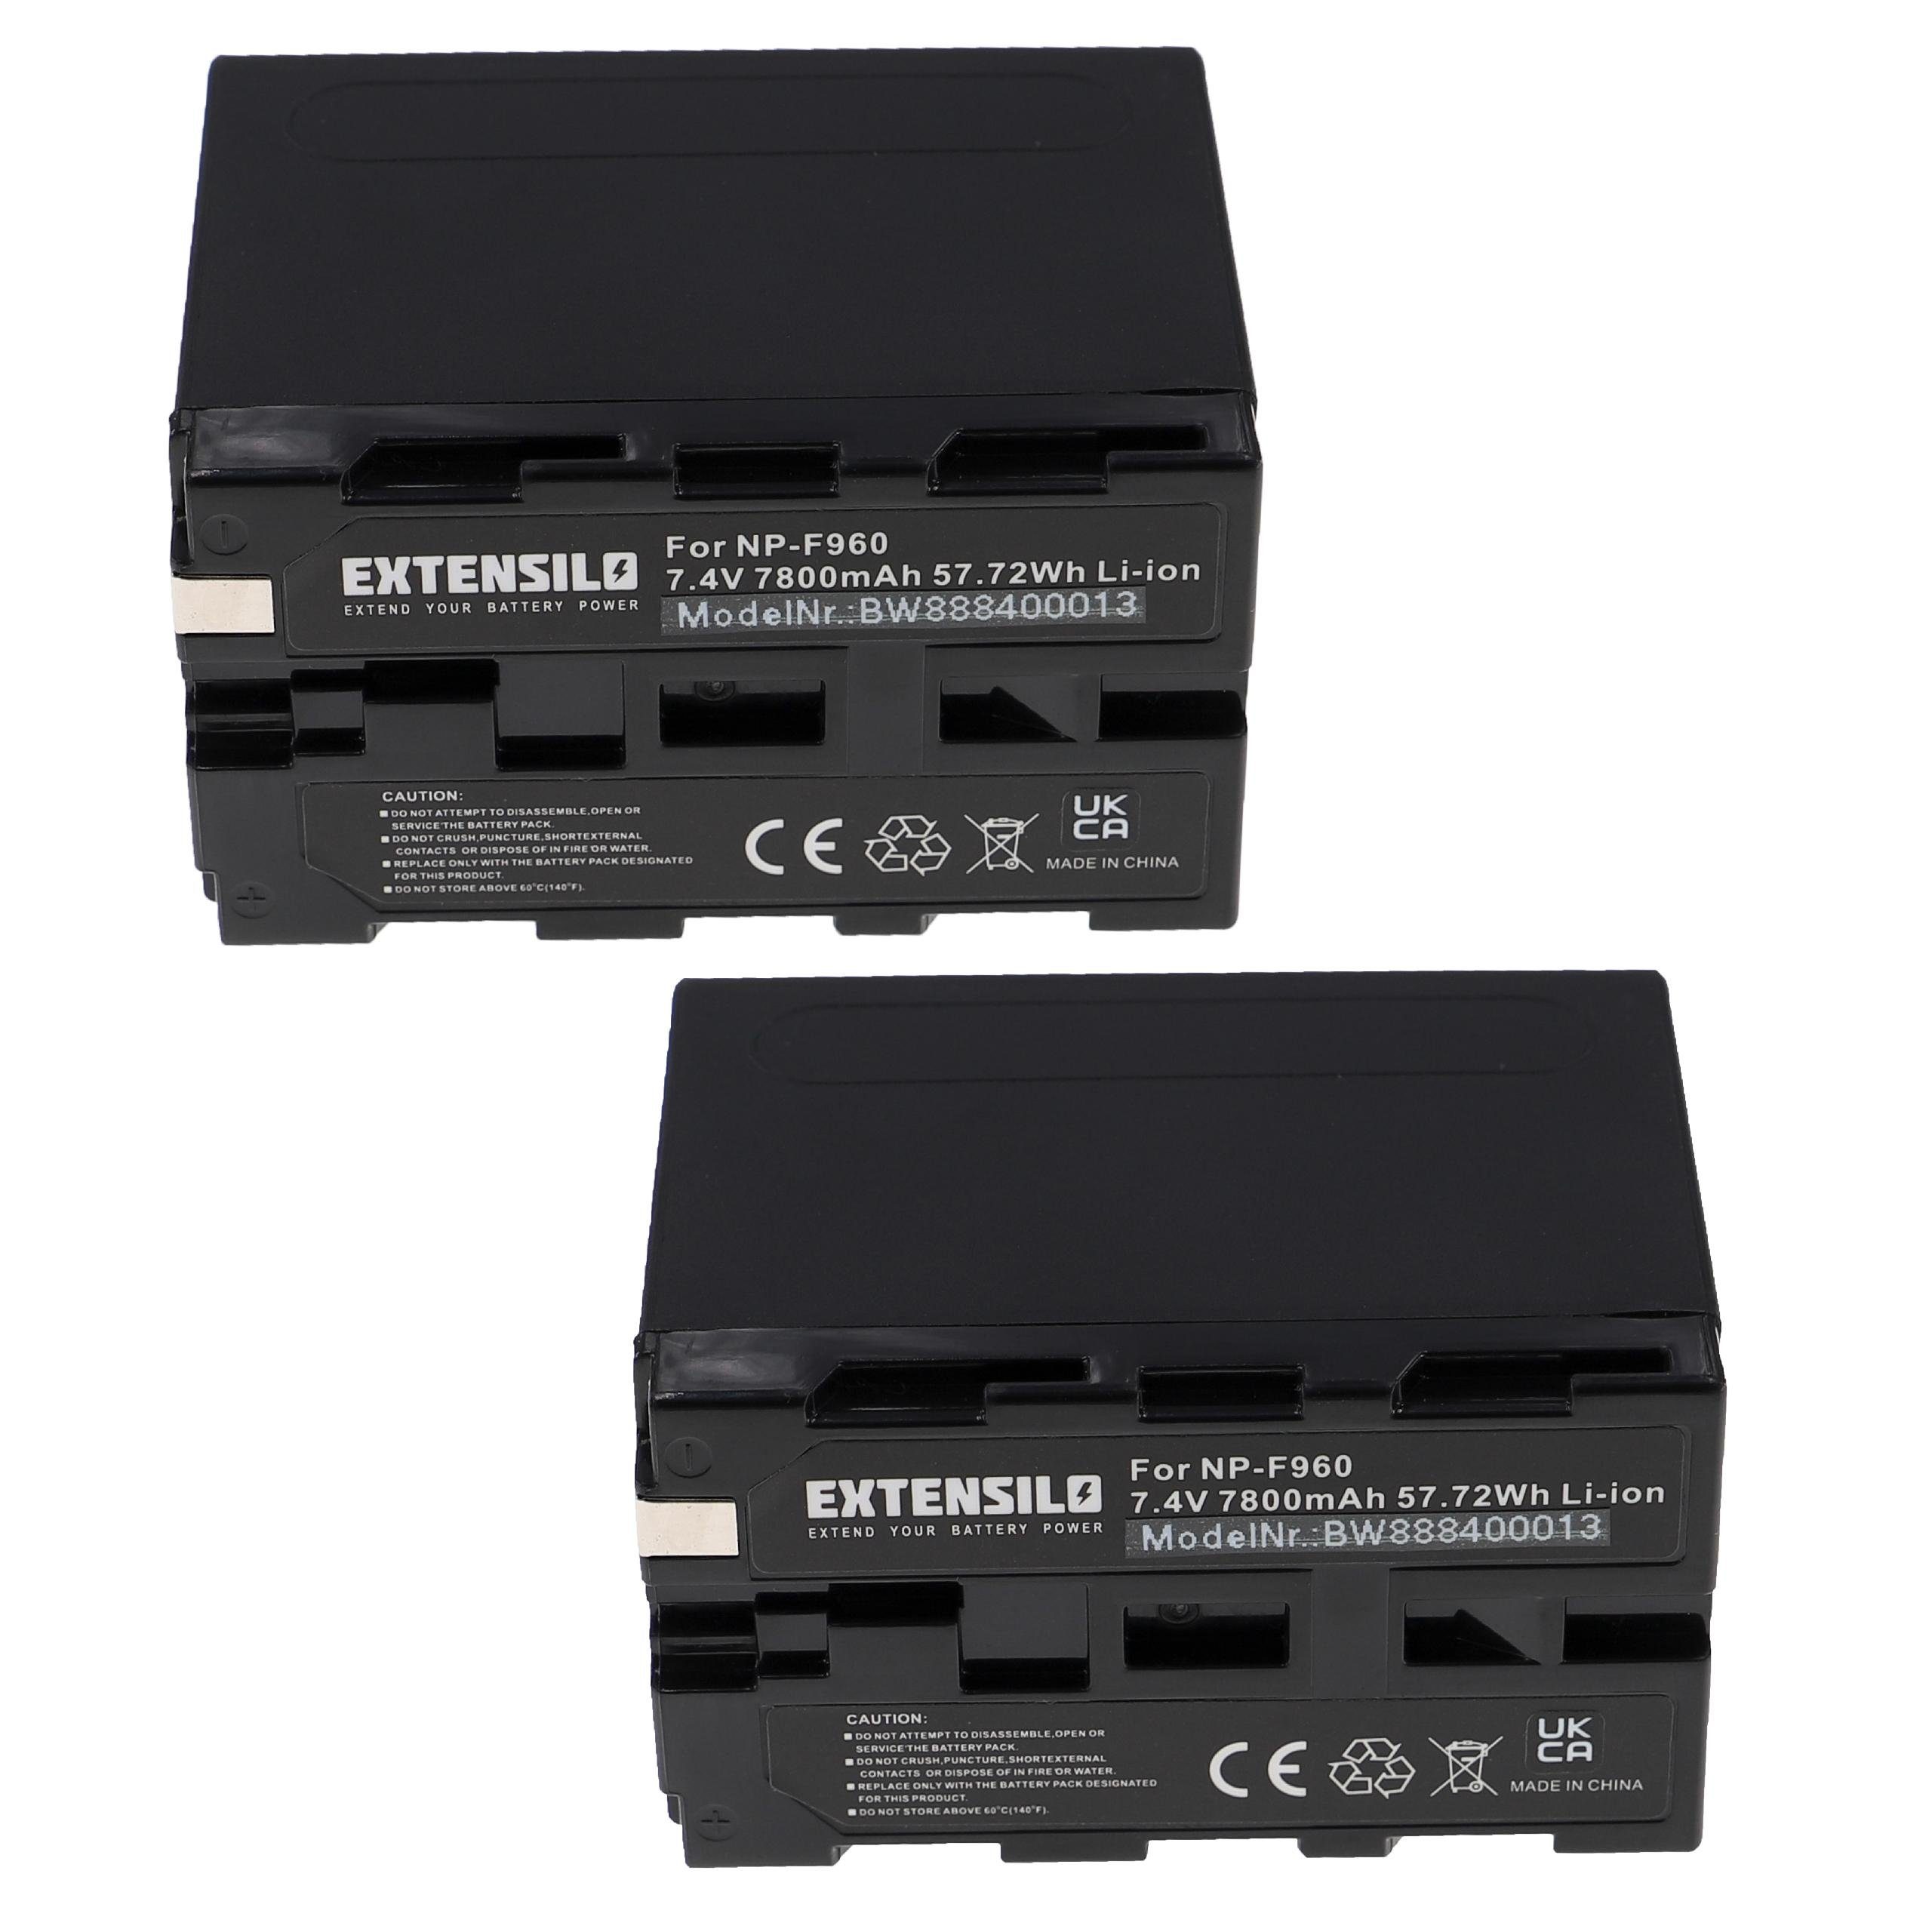 DCR-VX9 DSR-200, für DSC-CD100, Extensilo passend Serie, Sony DSC-CD250, Kamera-Akku mAh 7800